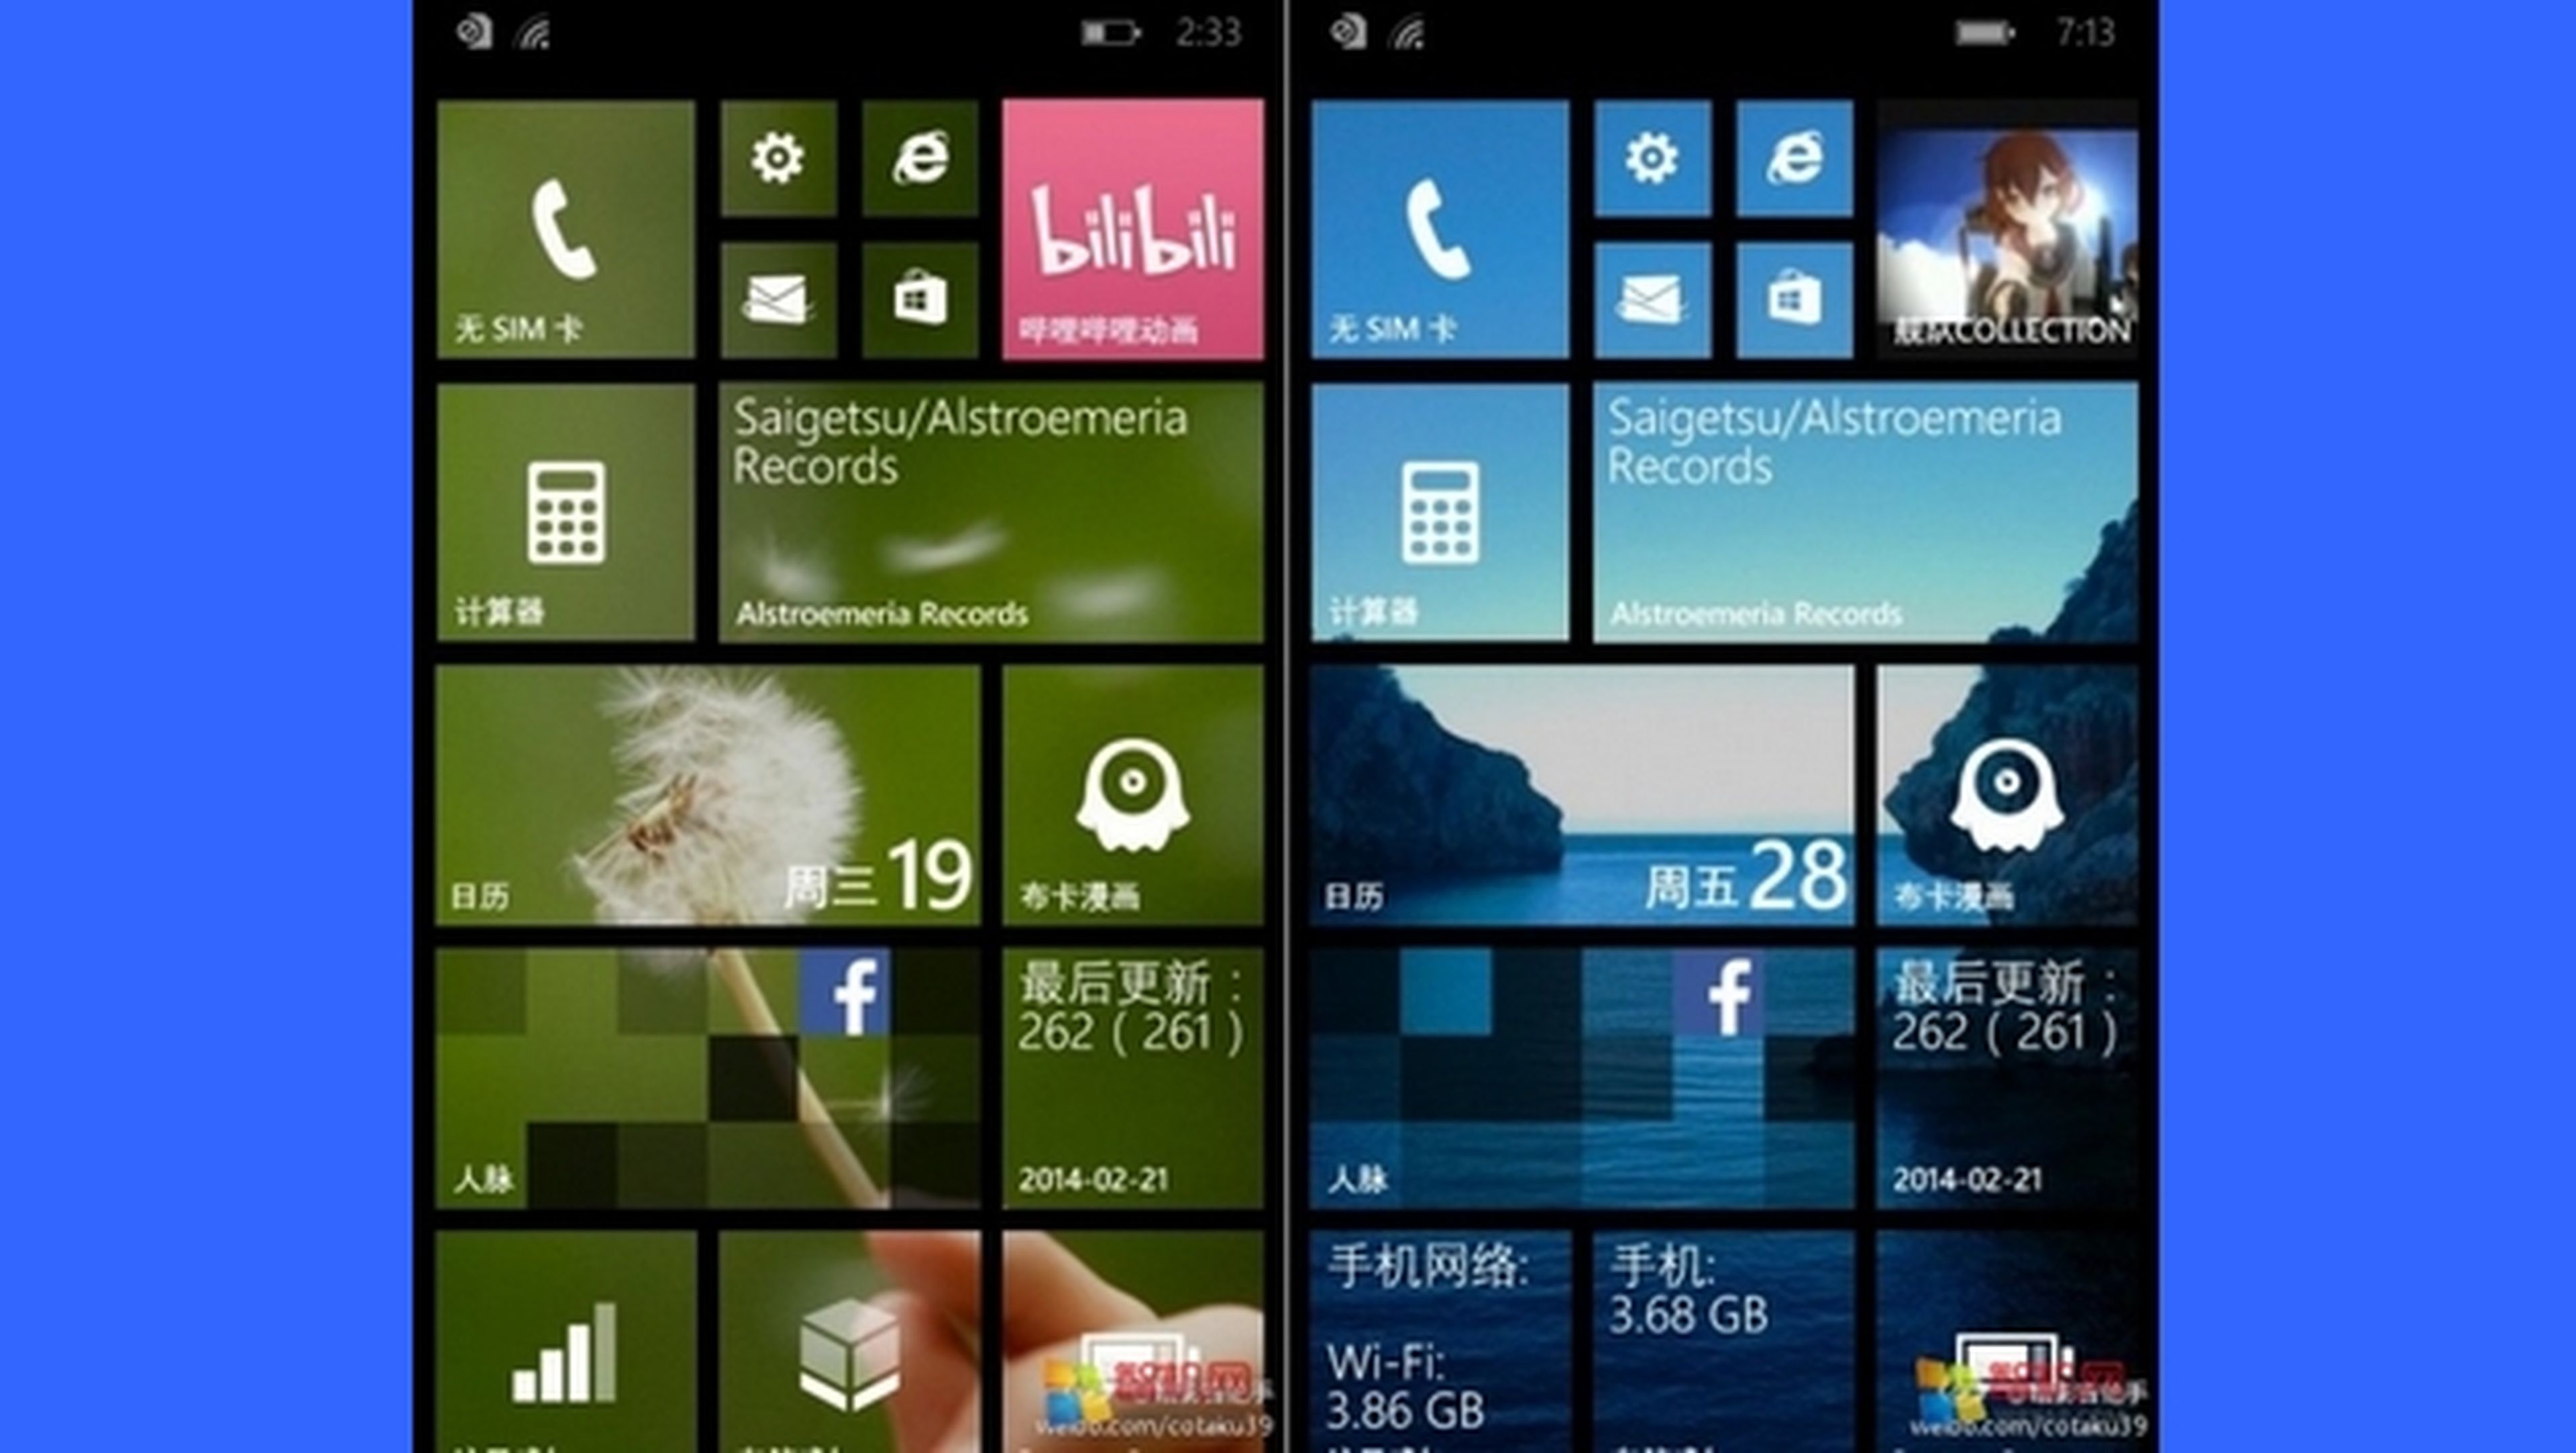 Se filtran imágenes de personalización de fondos de pantalla de Windows Phone 8.1